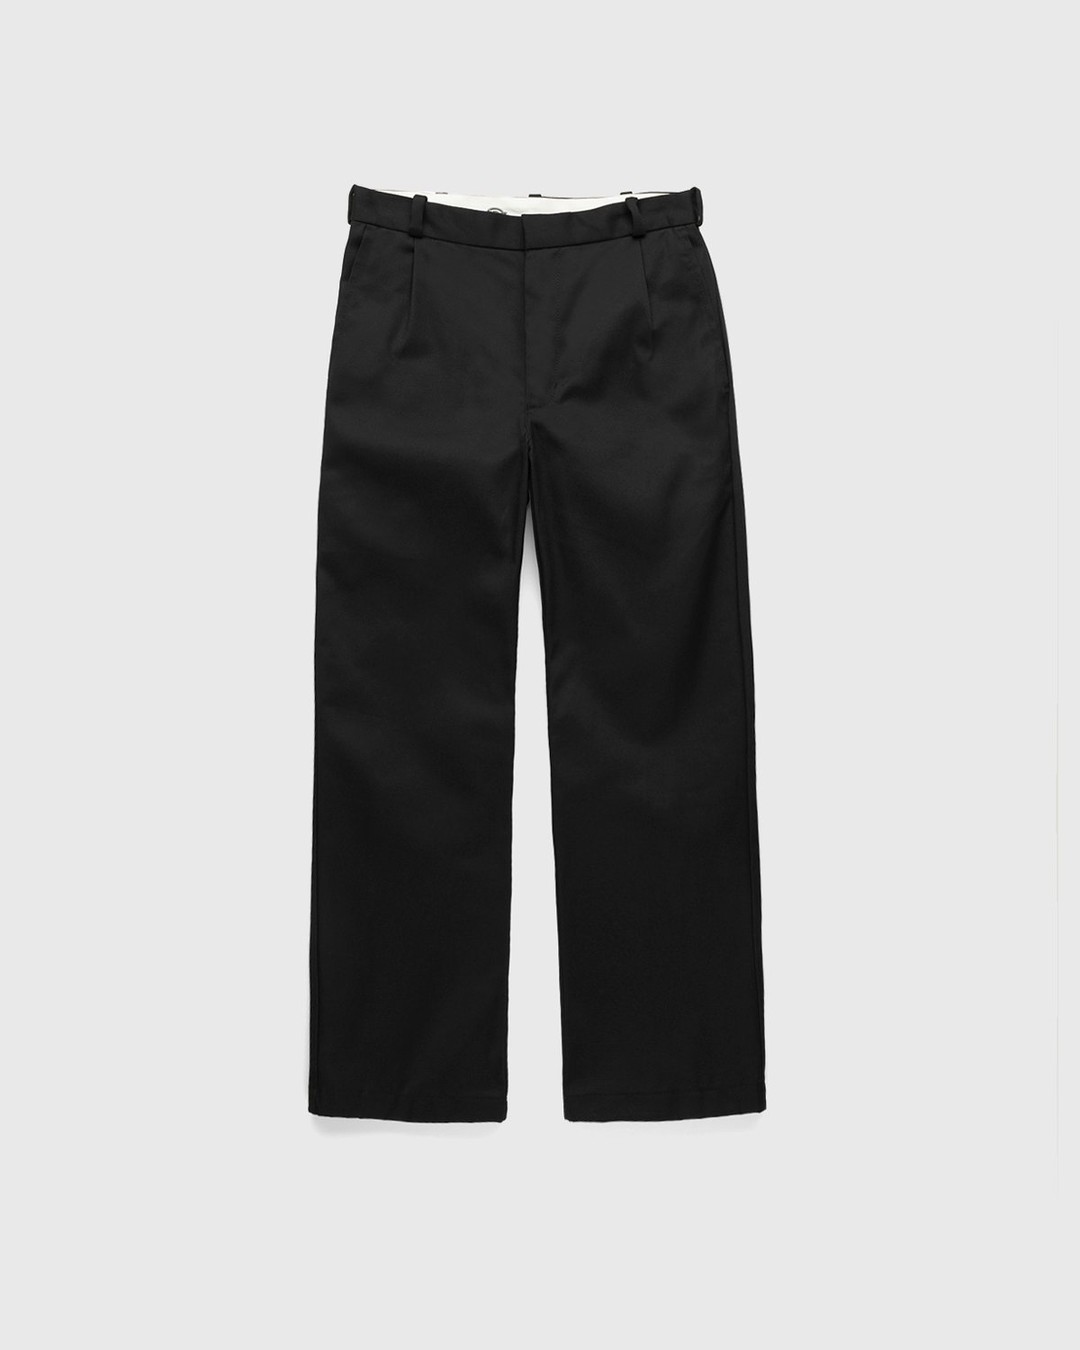 Highsnobiety x Dickies – Pleated Work Pants Black - Work Pants - Black - Image 1